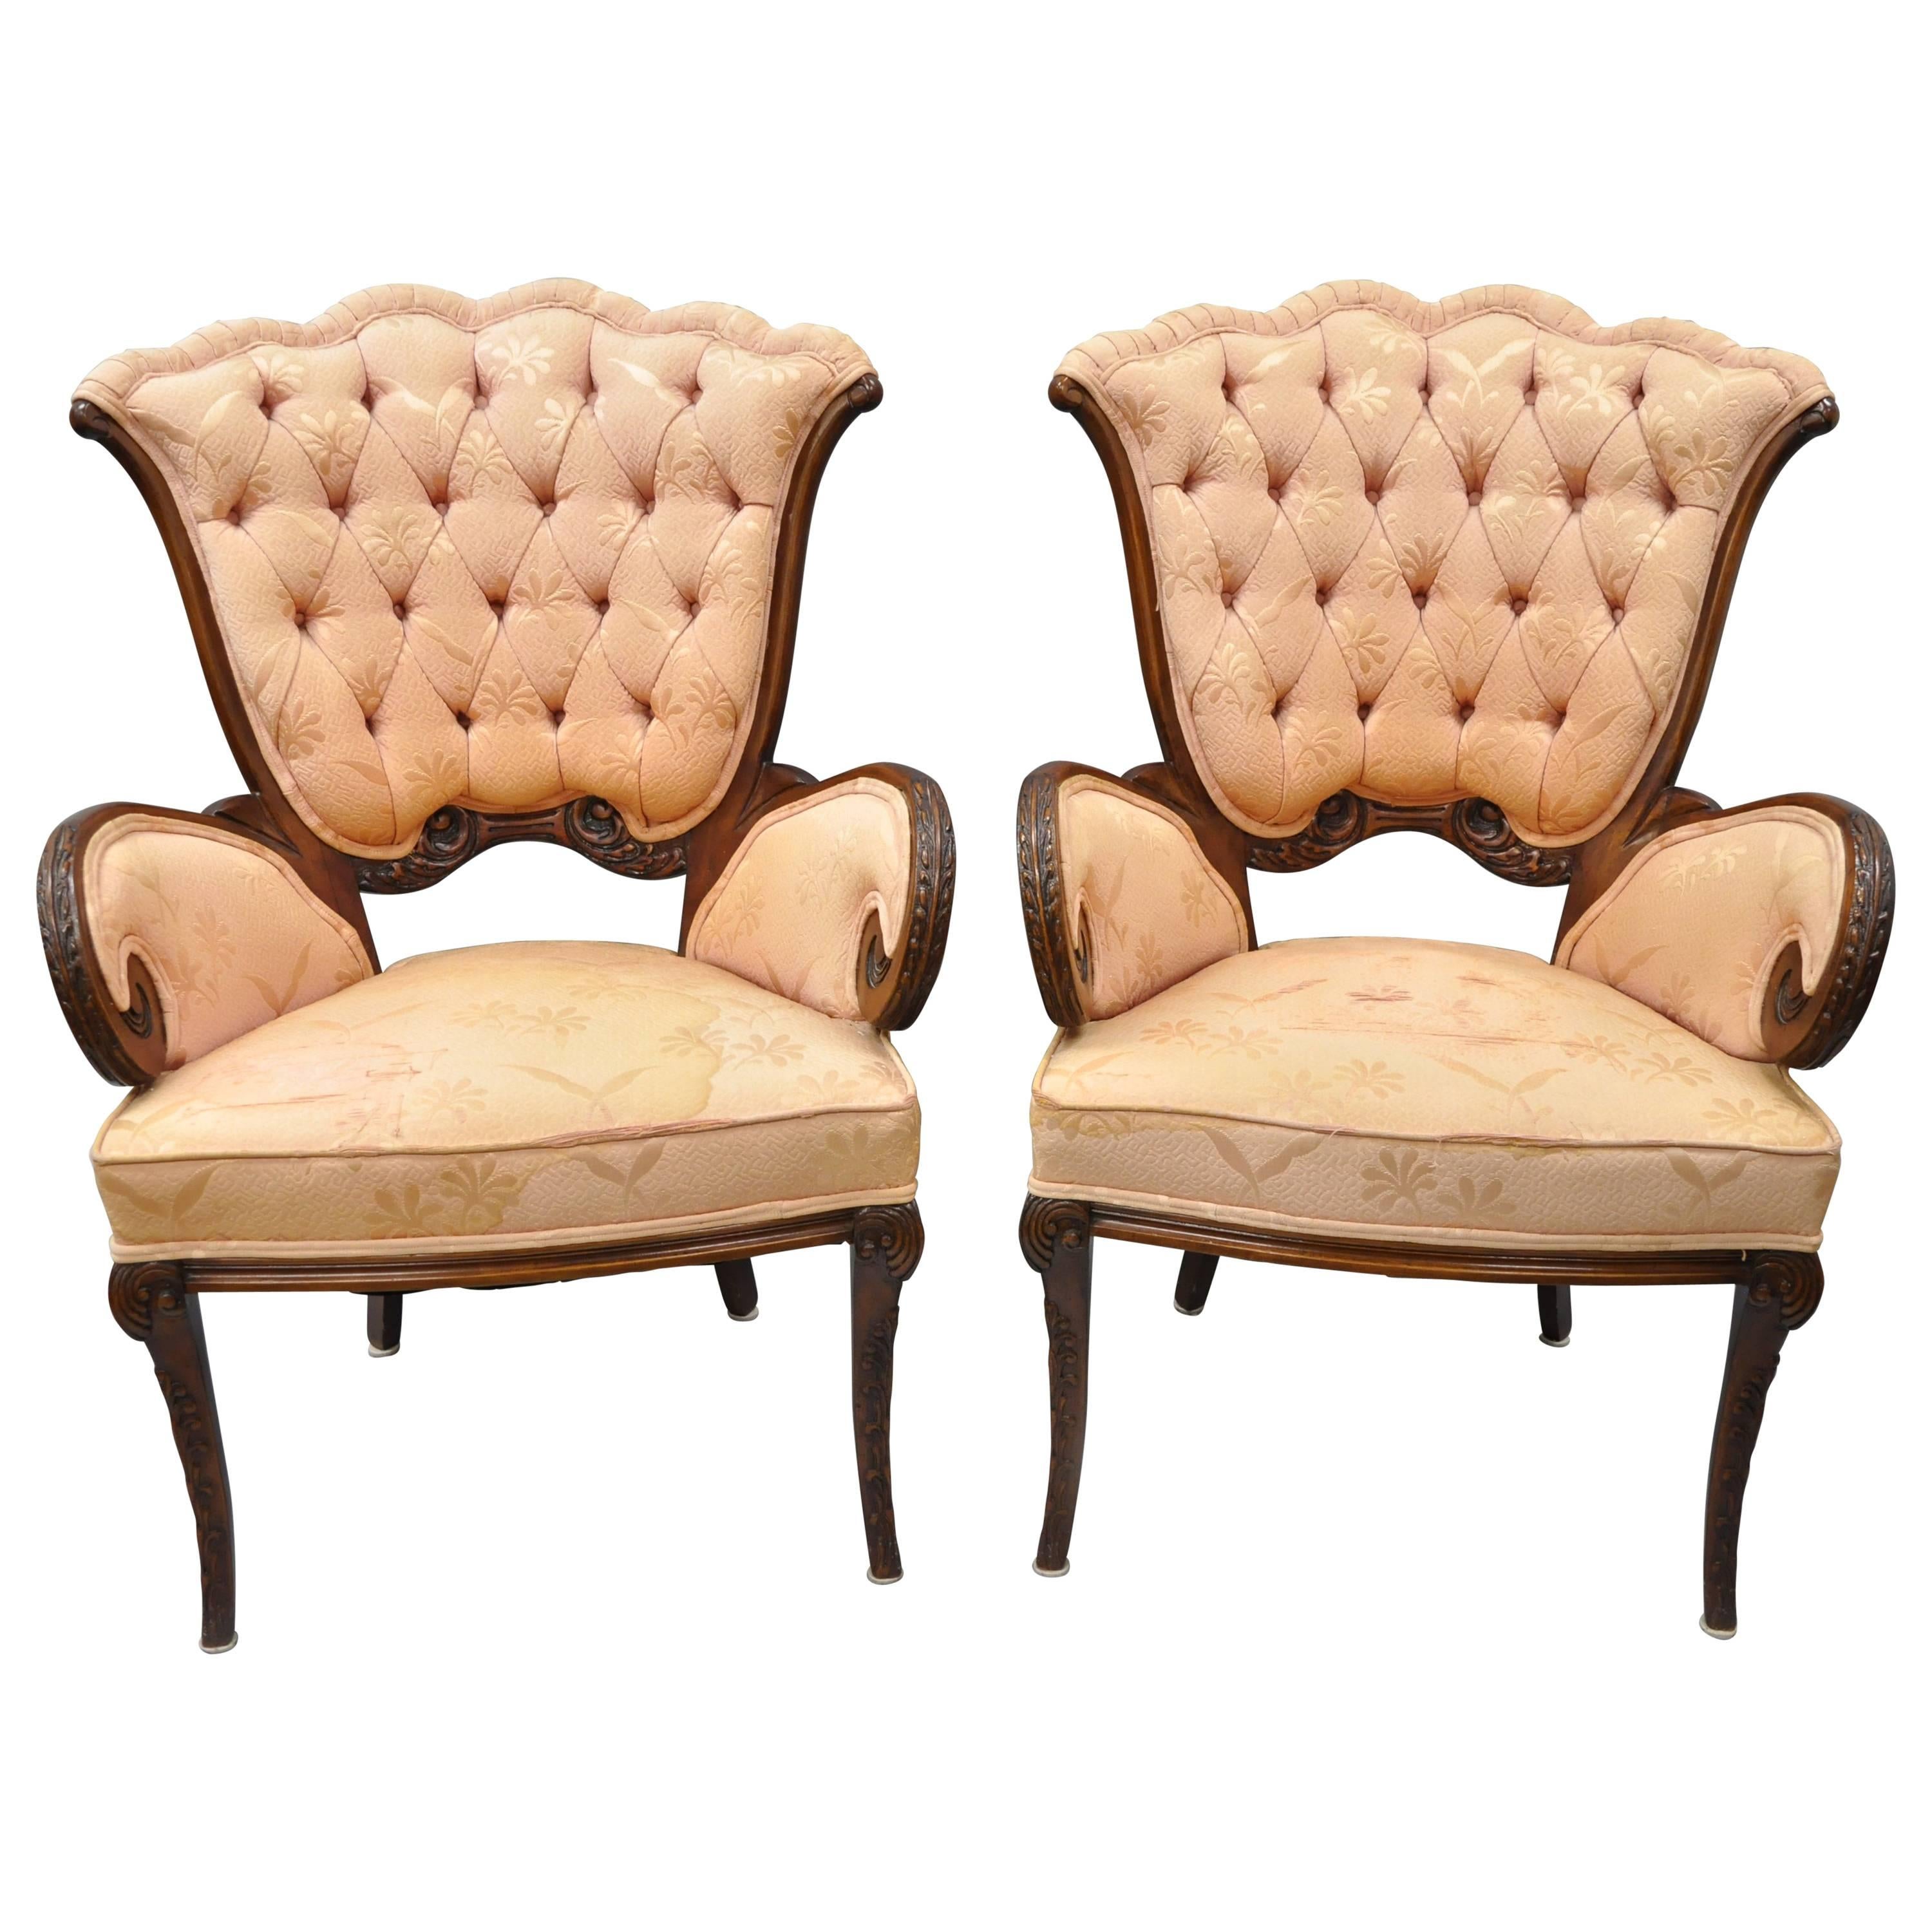 Paire de fauteuils touffetés en acajou de style Hollywood Regency attribués à Grosfeld House